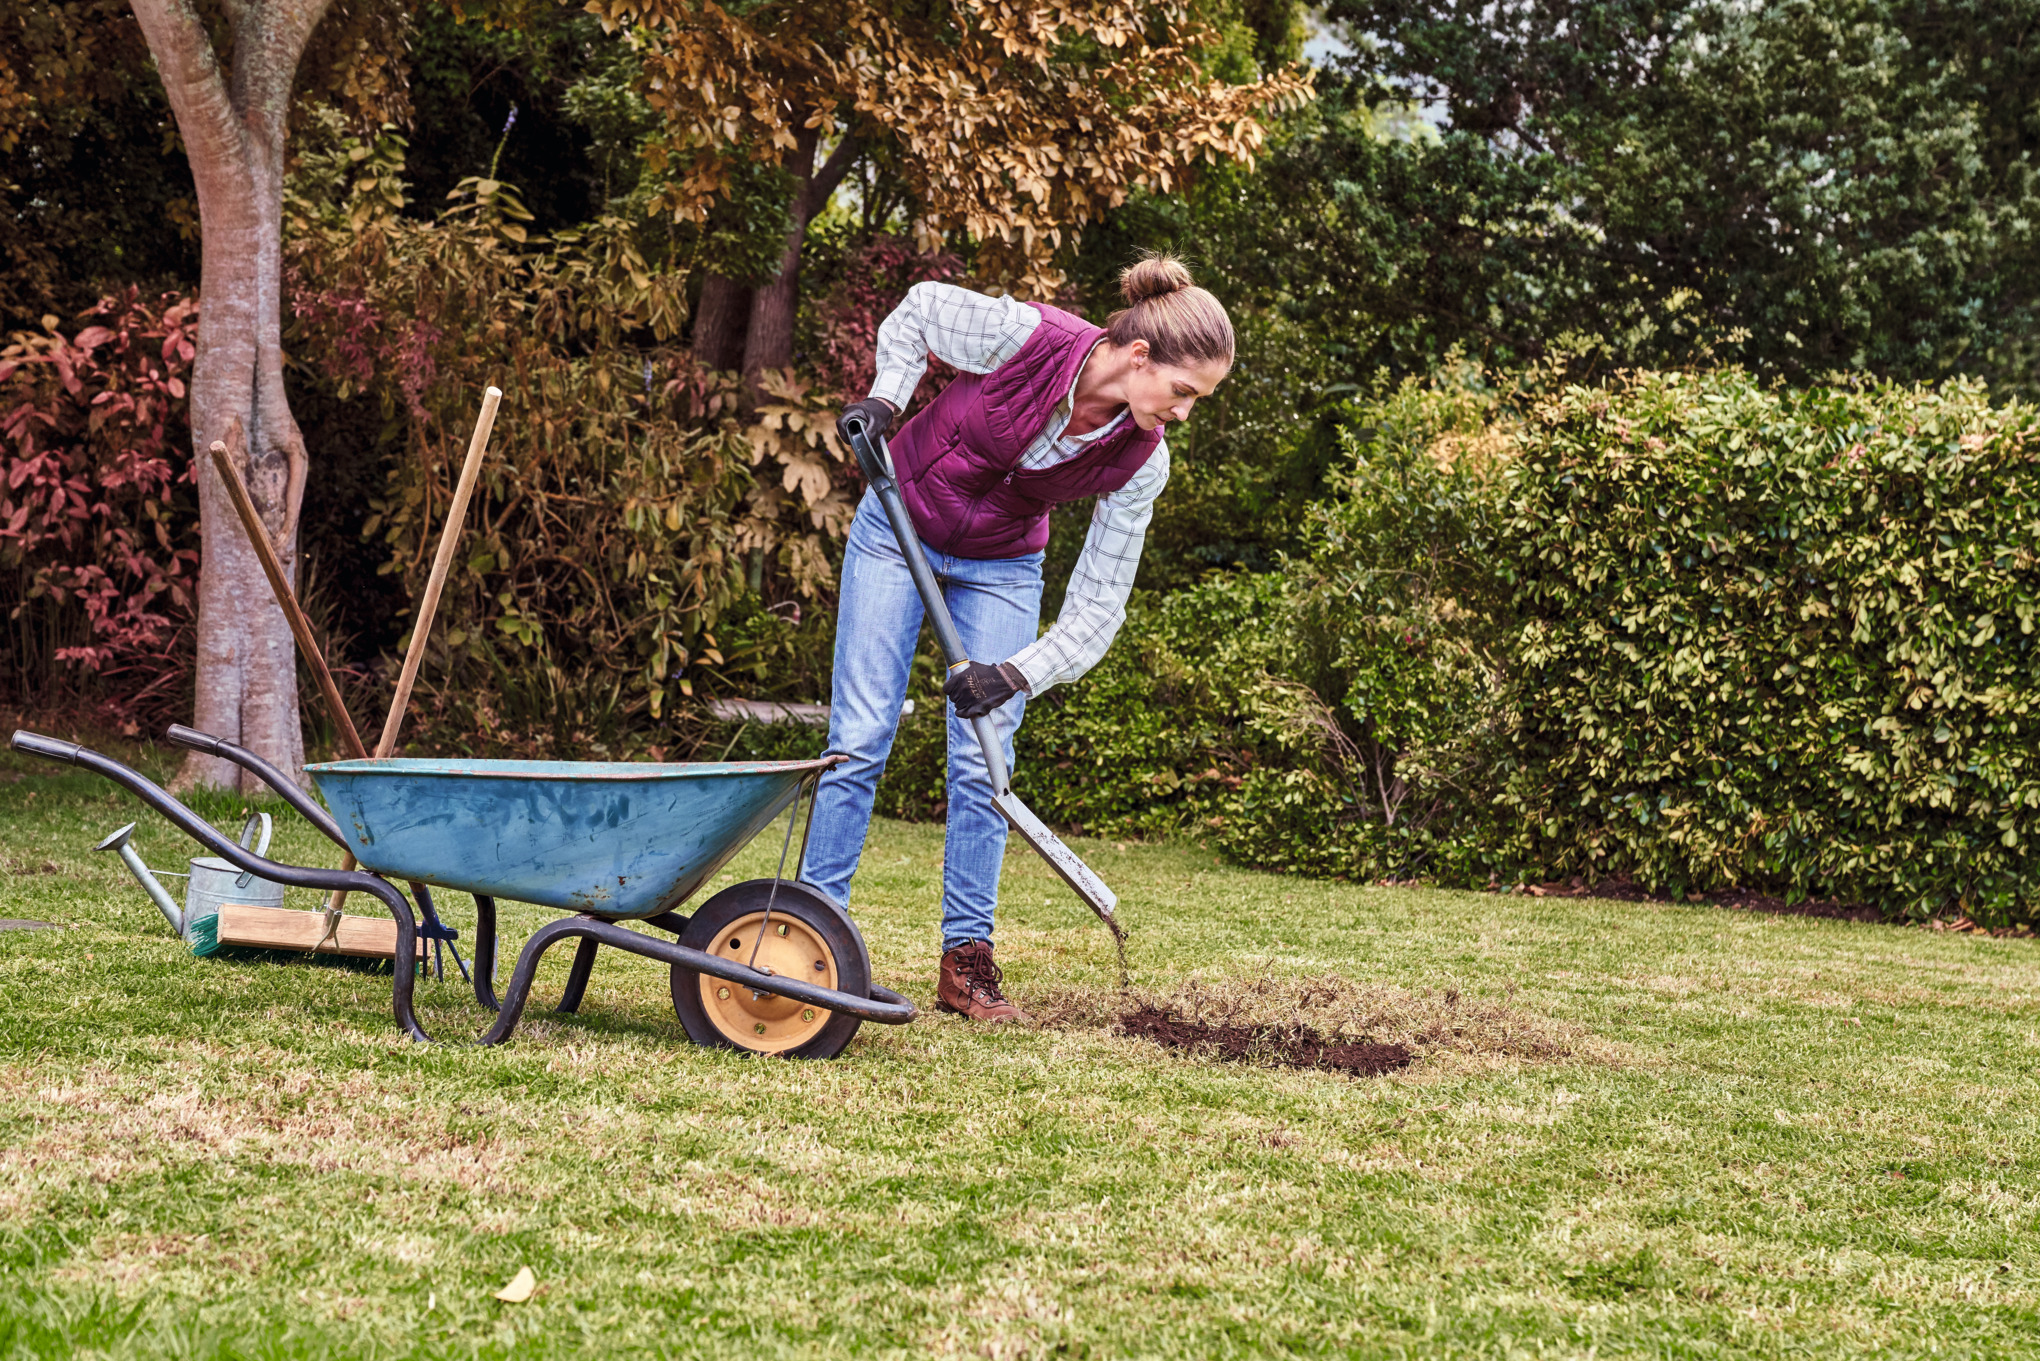  Bei der Rasenpflege im Herbst schaufelt eine Frau Erde aus einer Schubkarre, um Schäden im Rasen auszubessern